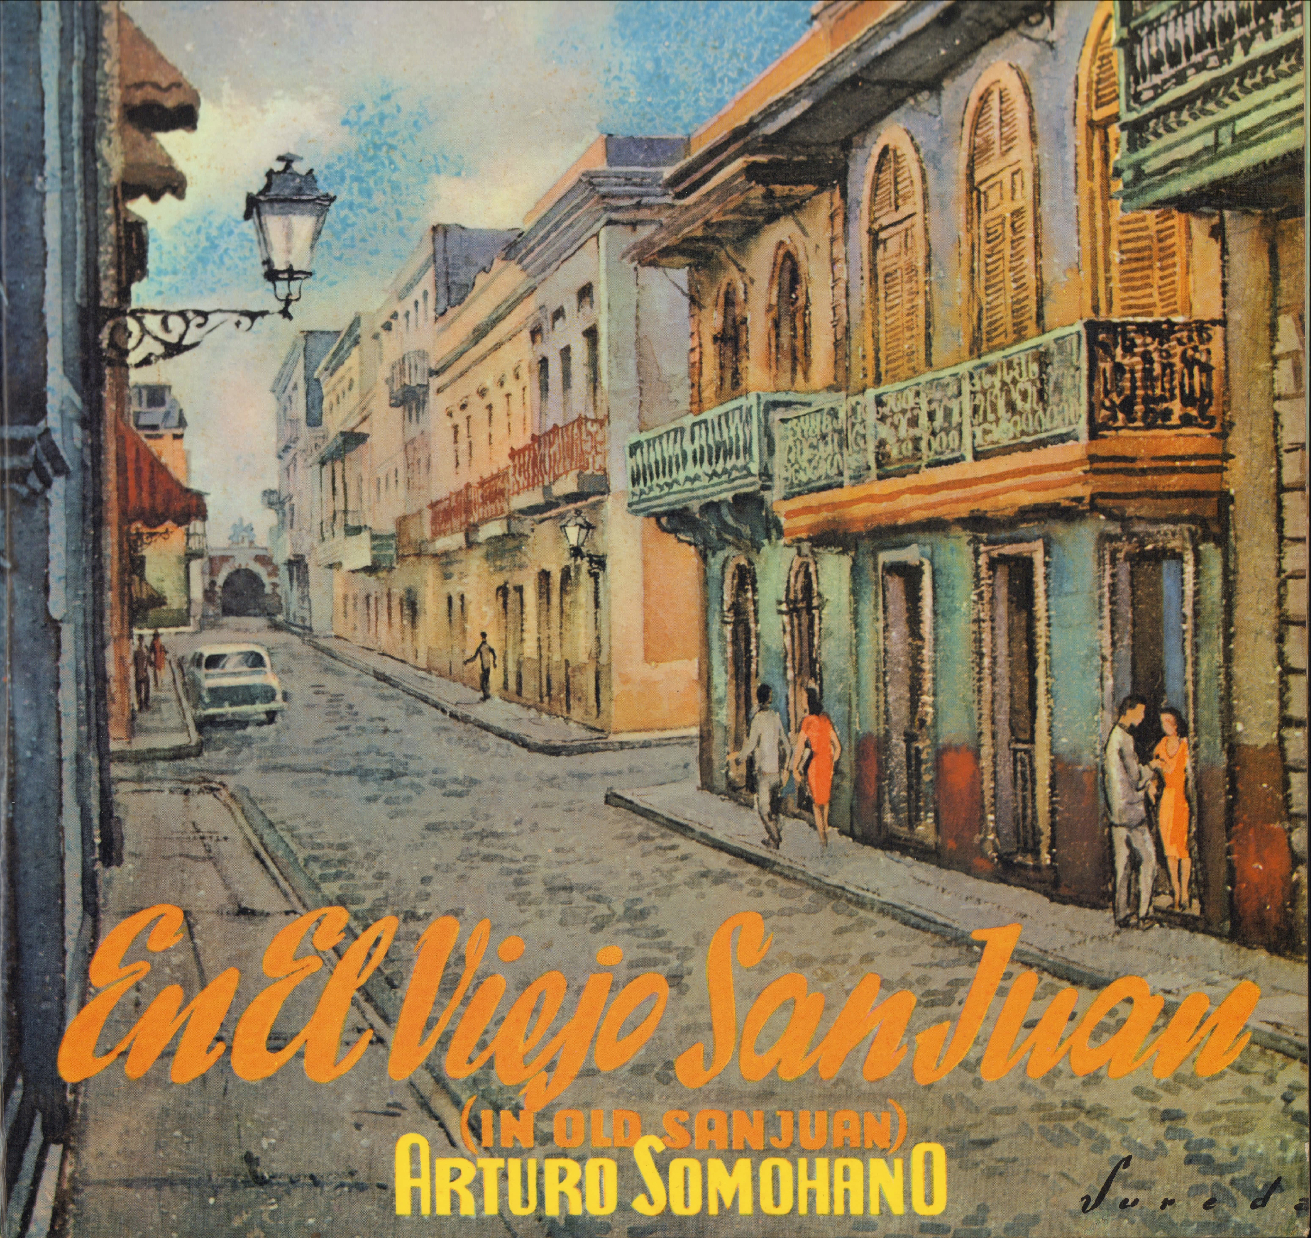 En el Viejo San Juan - Arturo Somohano y su Orquesta